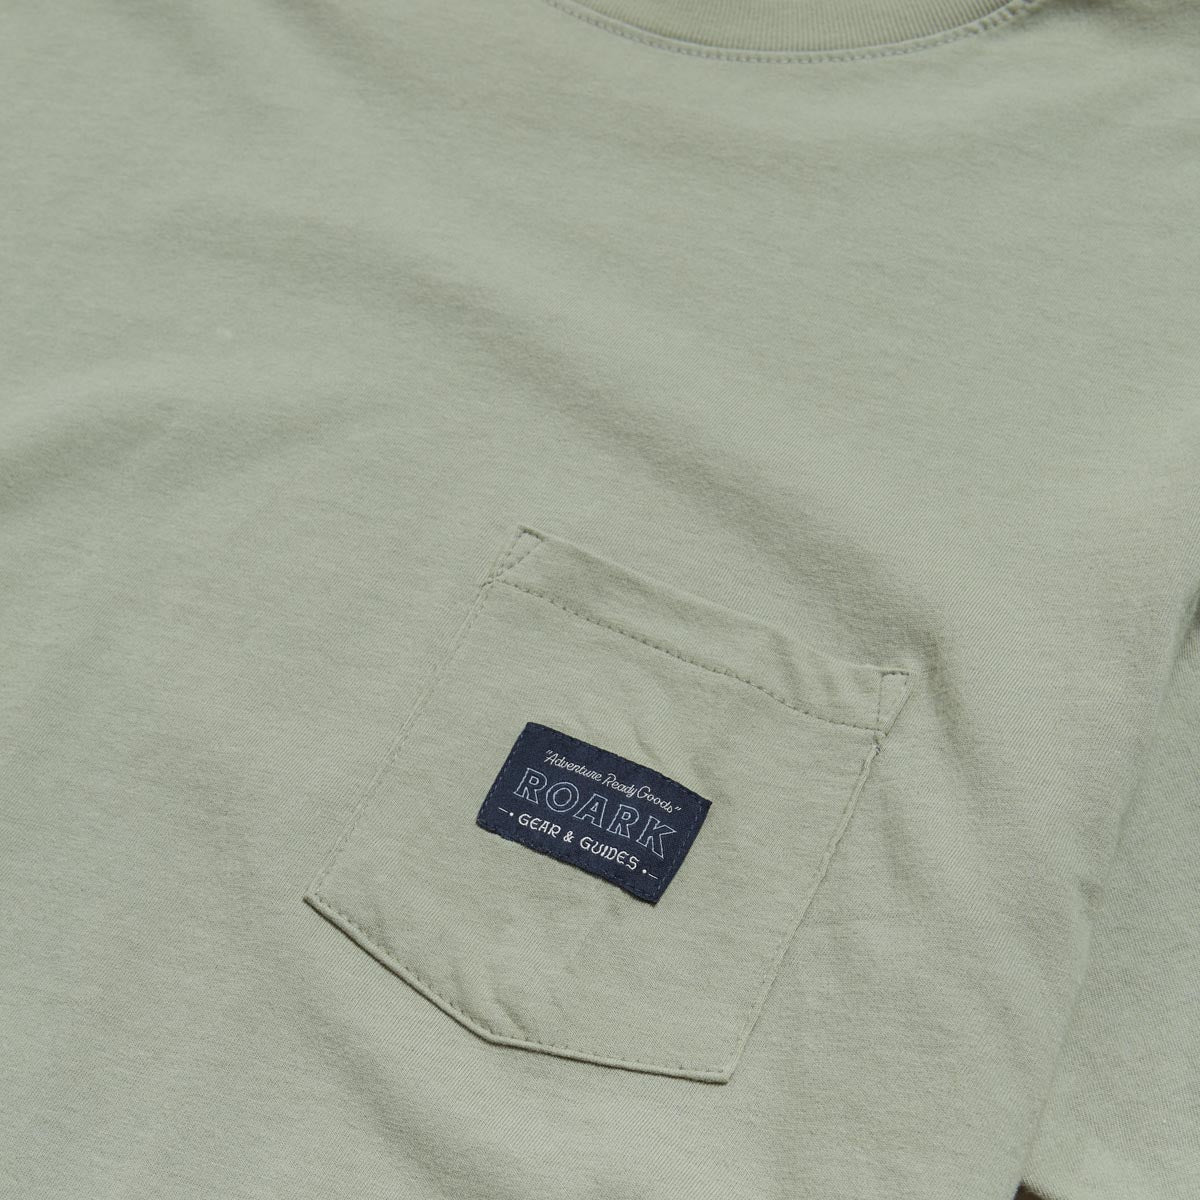 Roark Label Pocket T-Shirt - Chaparral image 2